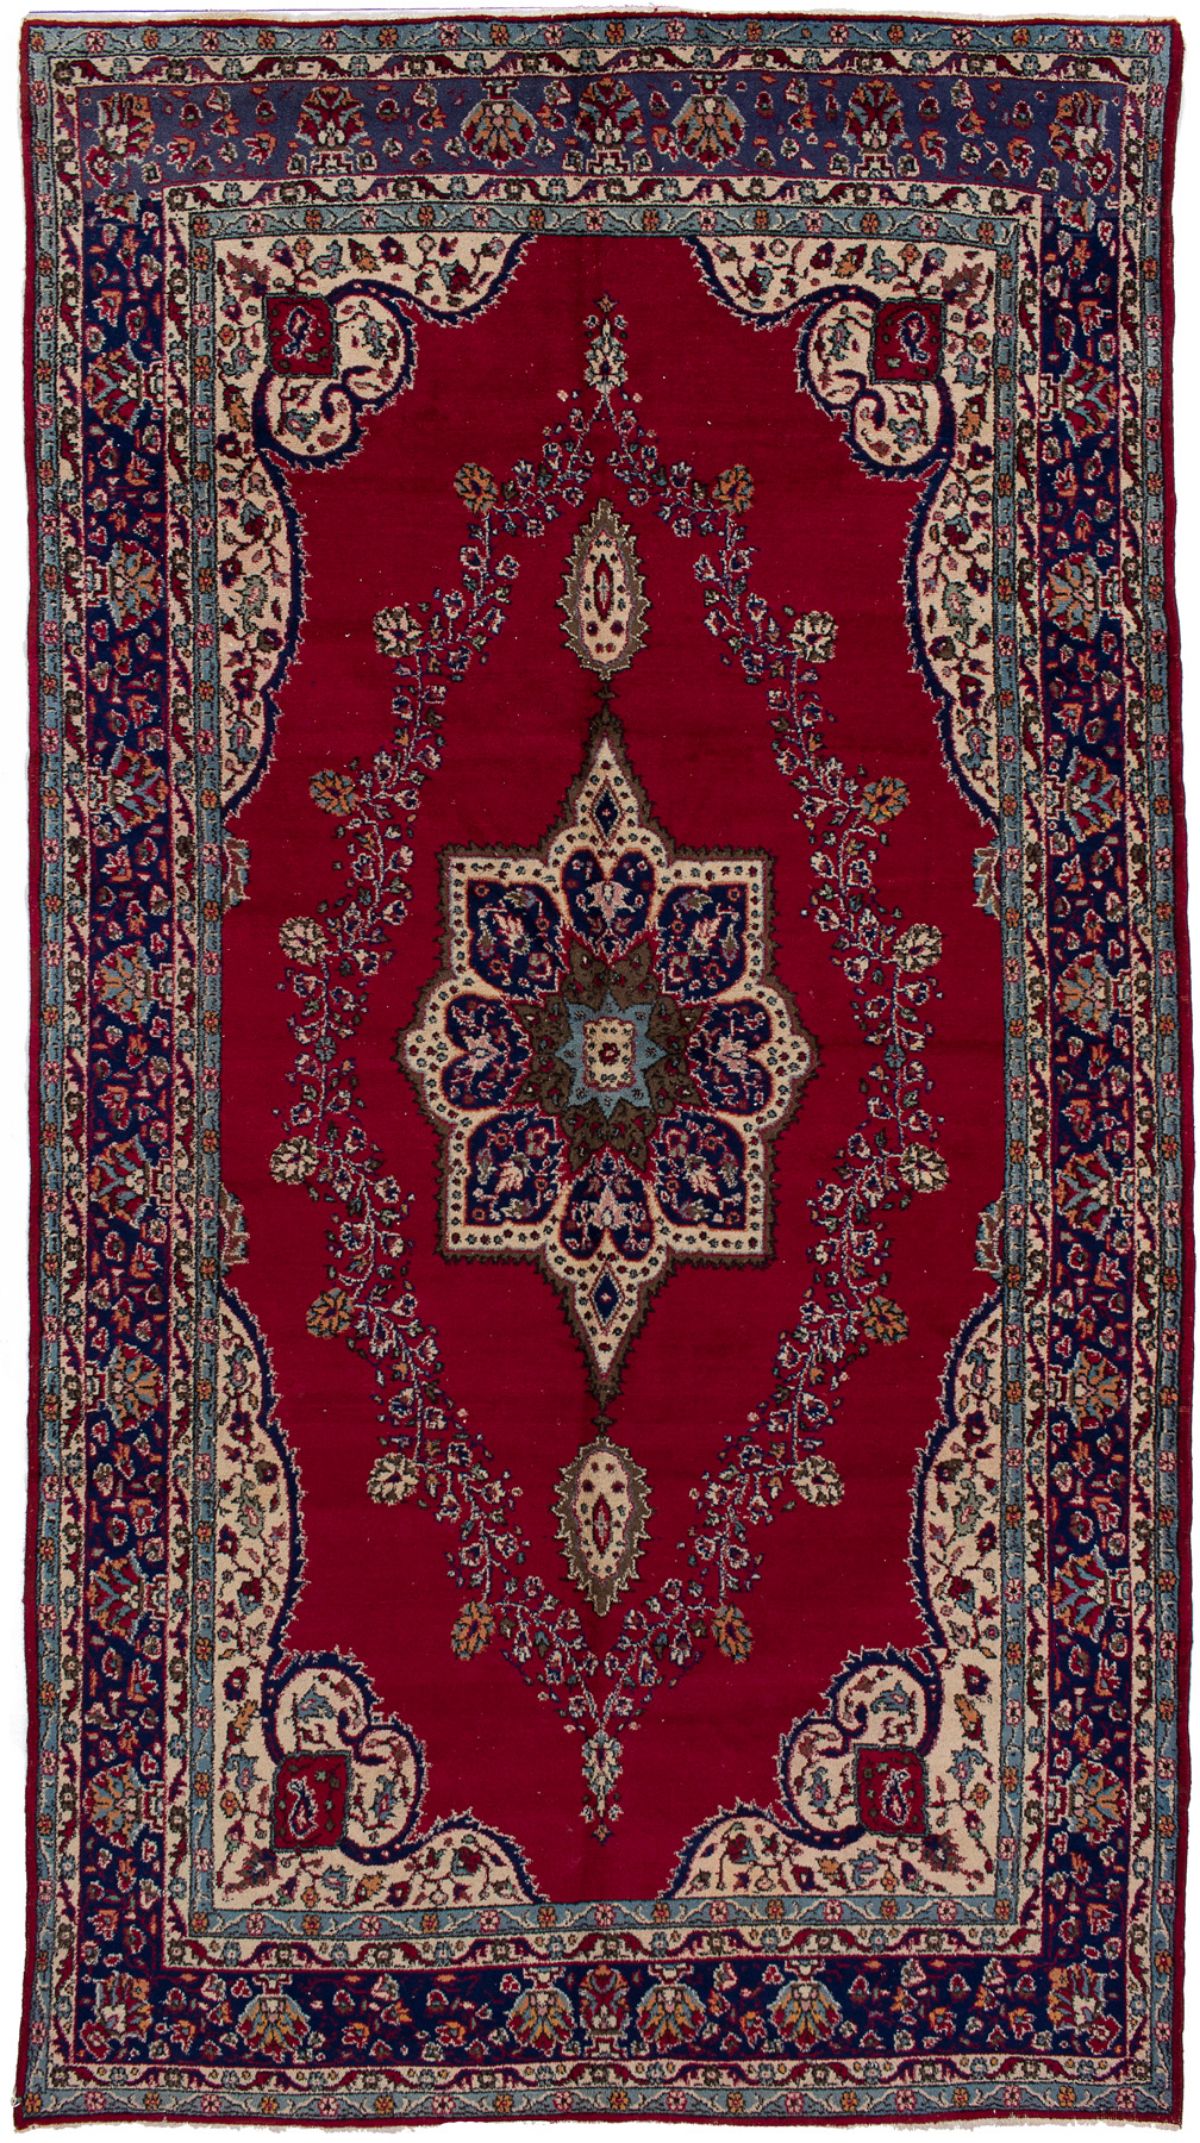 Hand-knotted Anadol Vintage Dark Red Wool Rug 6'10" x 12'8" Size: 6'10" x 12'8"  